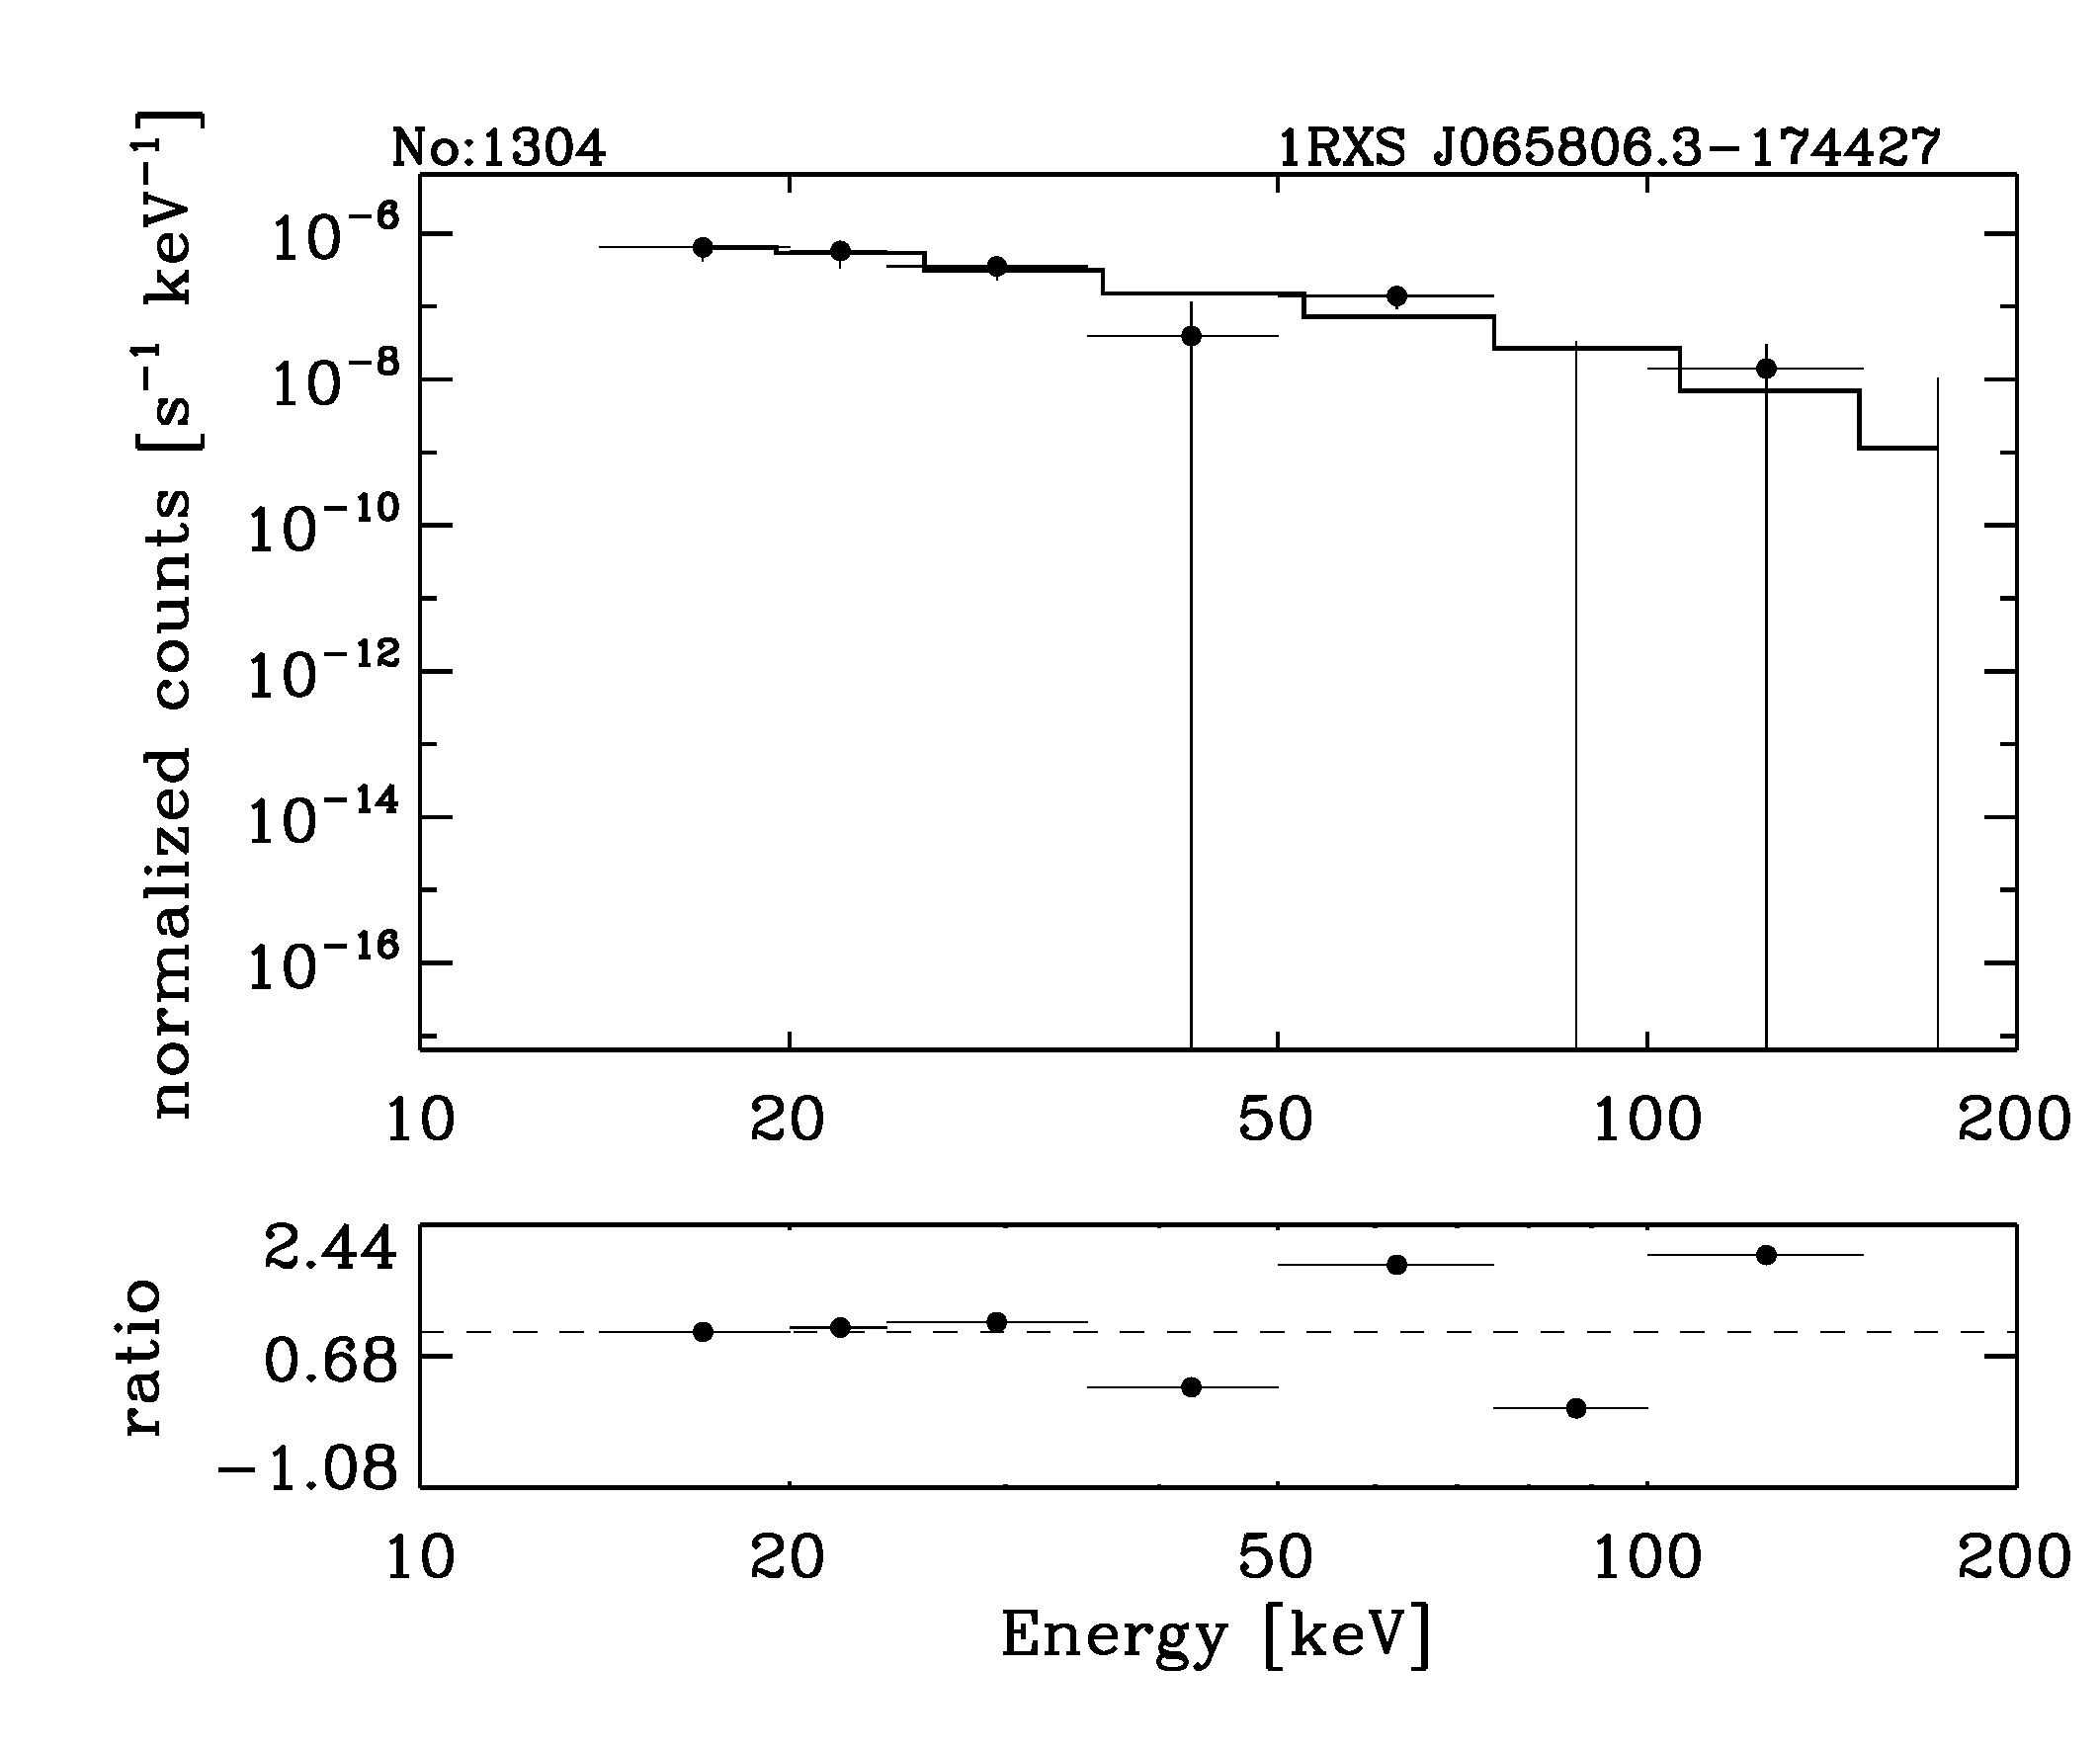 BAT Spectrum for SWIFT J0657.9-1775